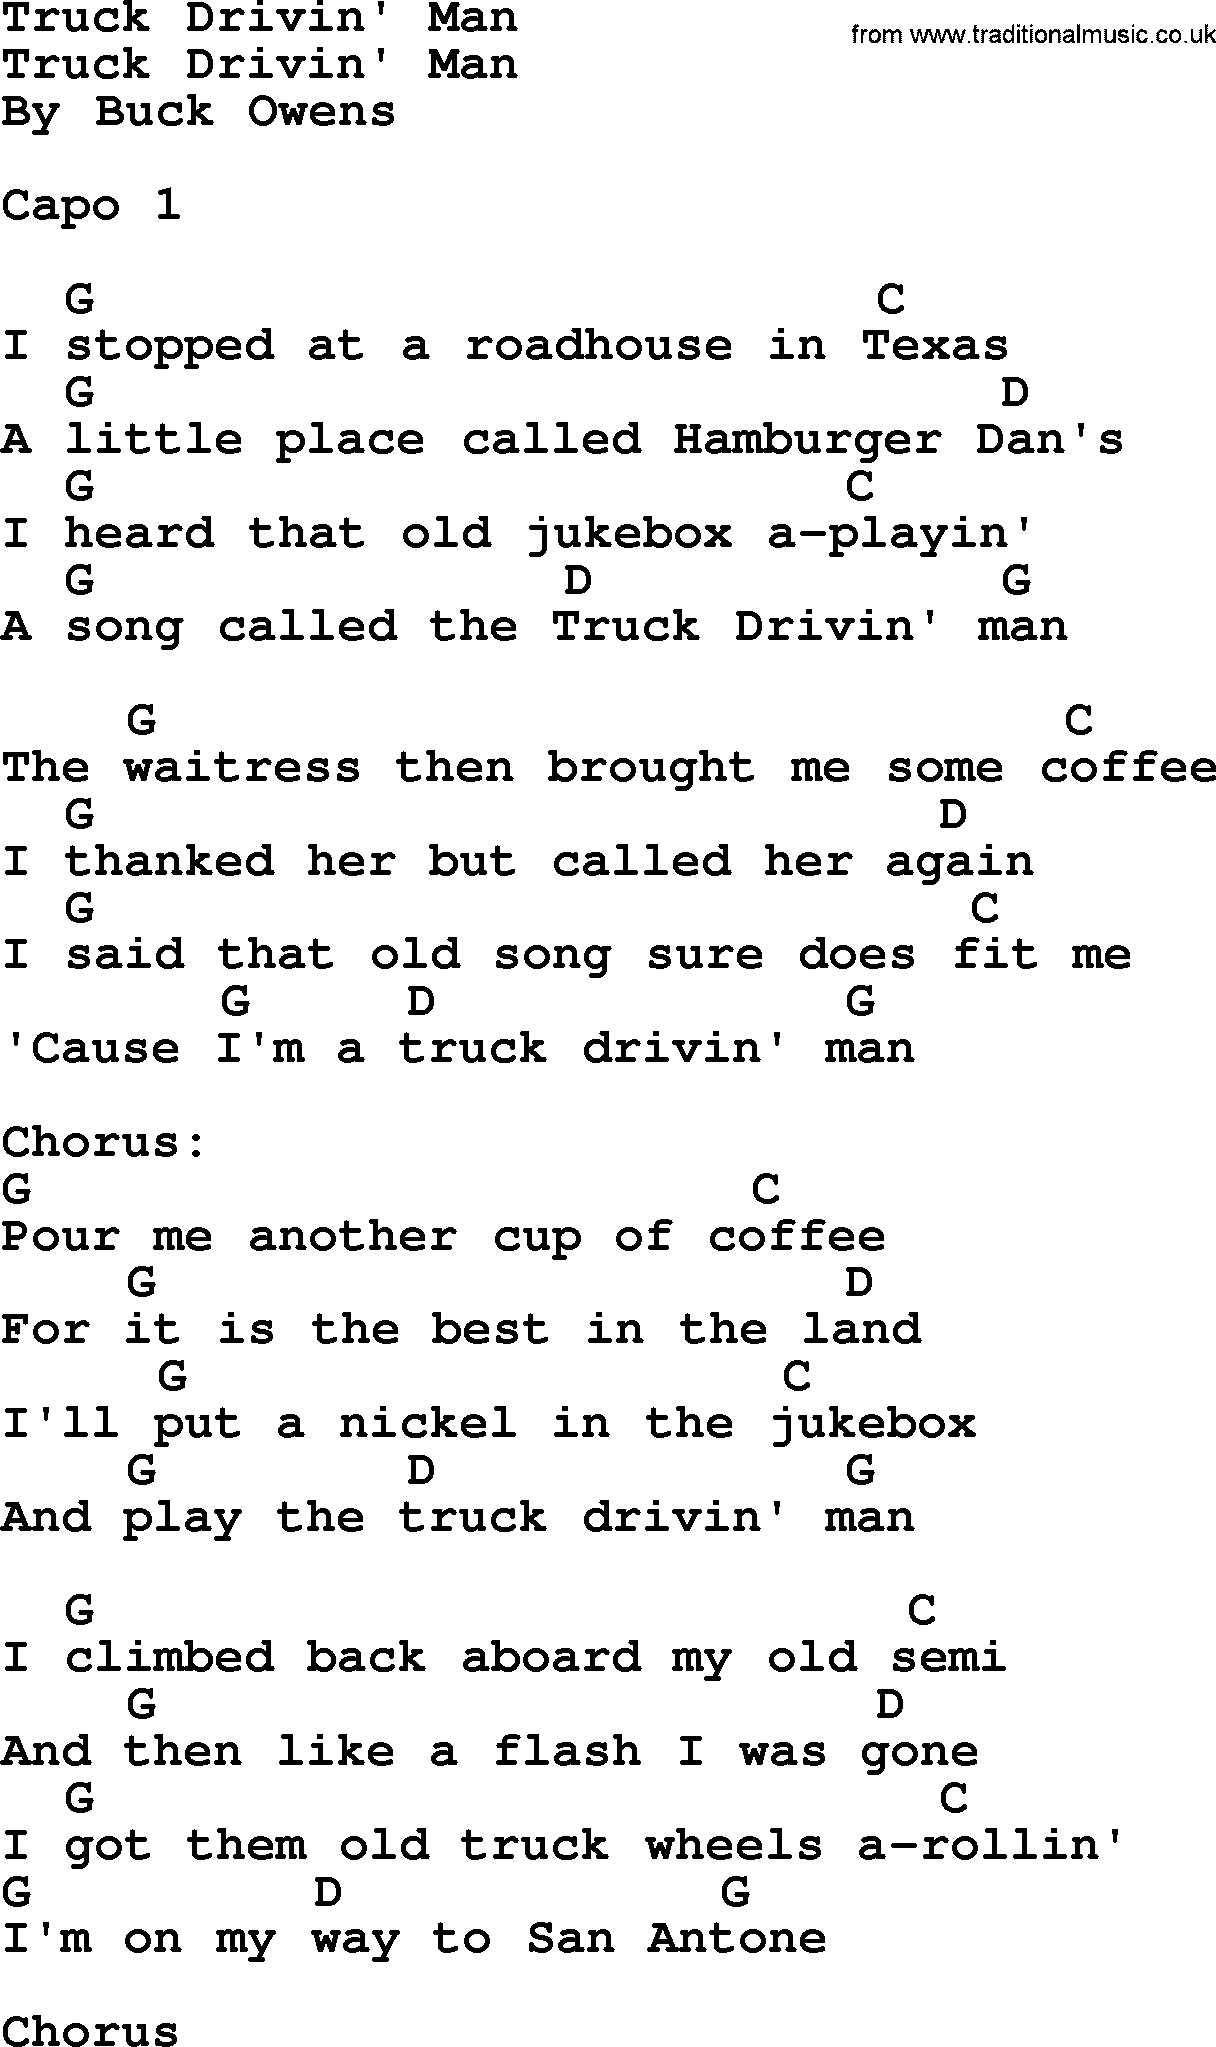 Bluegrass song: Truck Drivin' Man, lyrics and chords